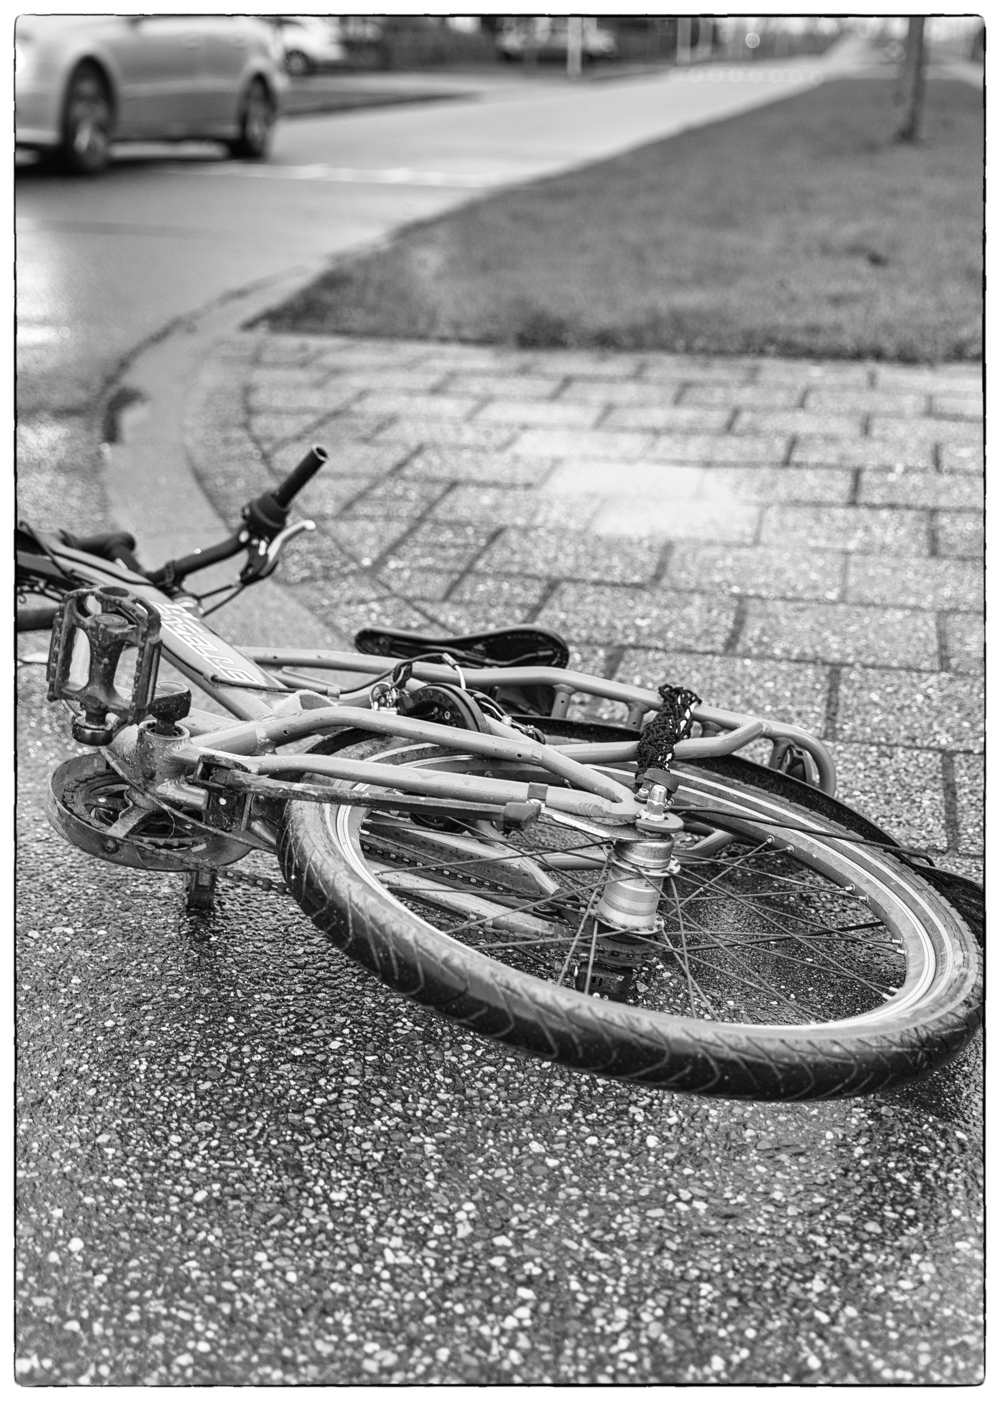 Letselschade bij fietser ten gevolge van uitwijkmanoeuvre, automobilist aansprakelijk?